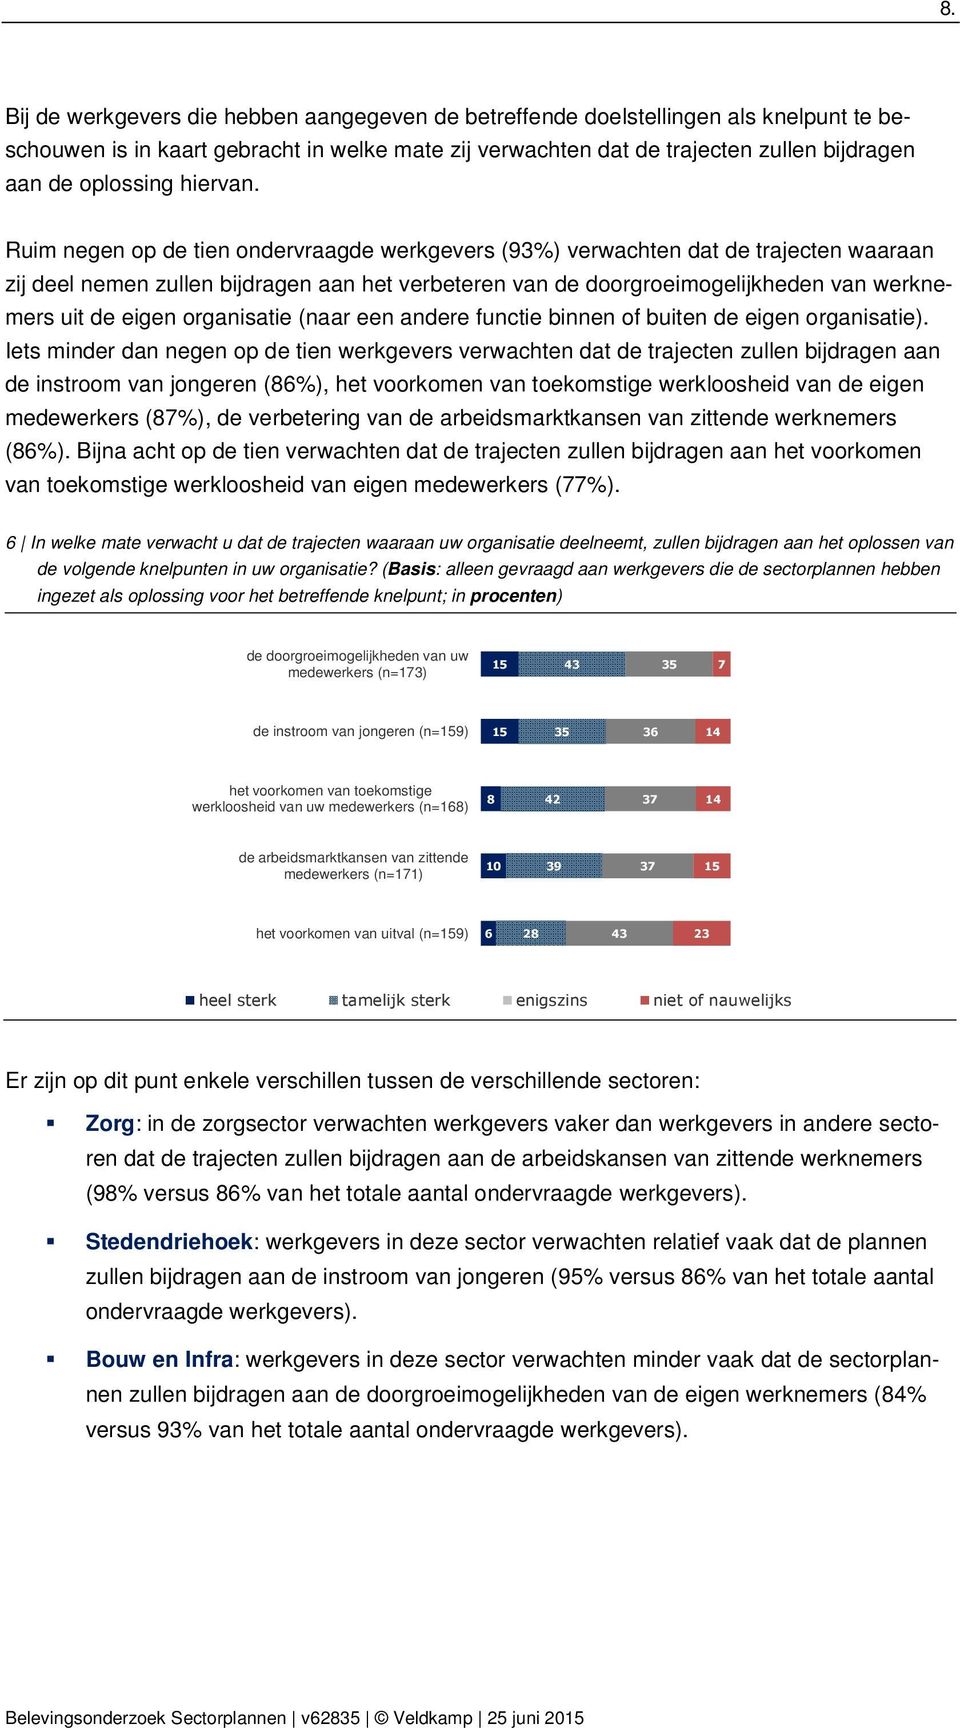 Ruim negen op de tien werkgevers (93%) verwachten dat de trajecten waaraan zij deel nemen zullen bijdragen aan het verbeteren van de doorgroeimogelijkheden van werknemers uit de eigen organisatie